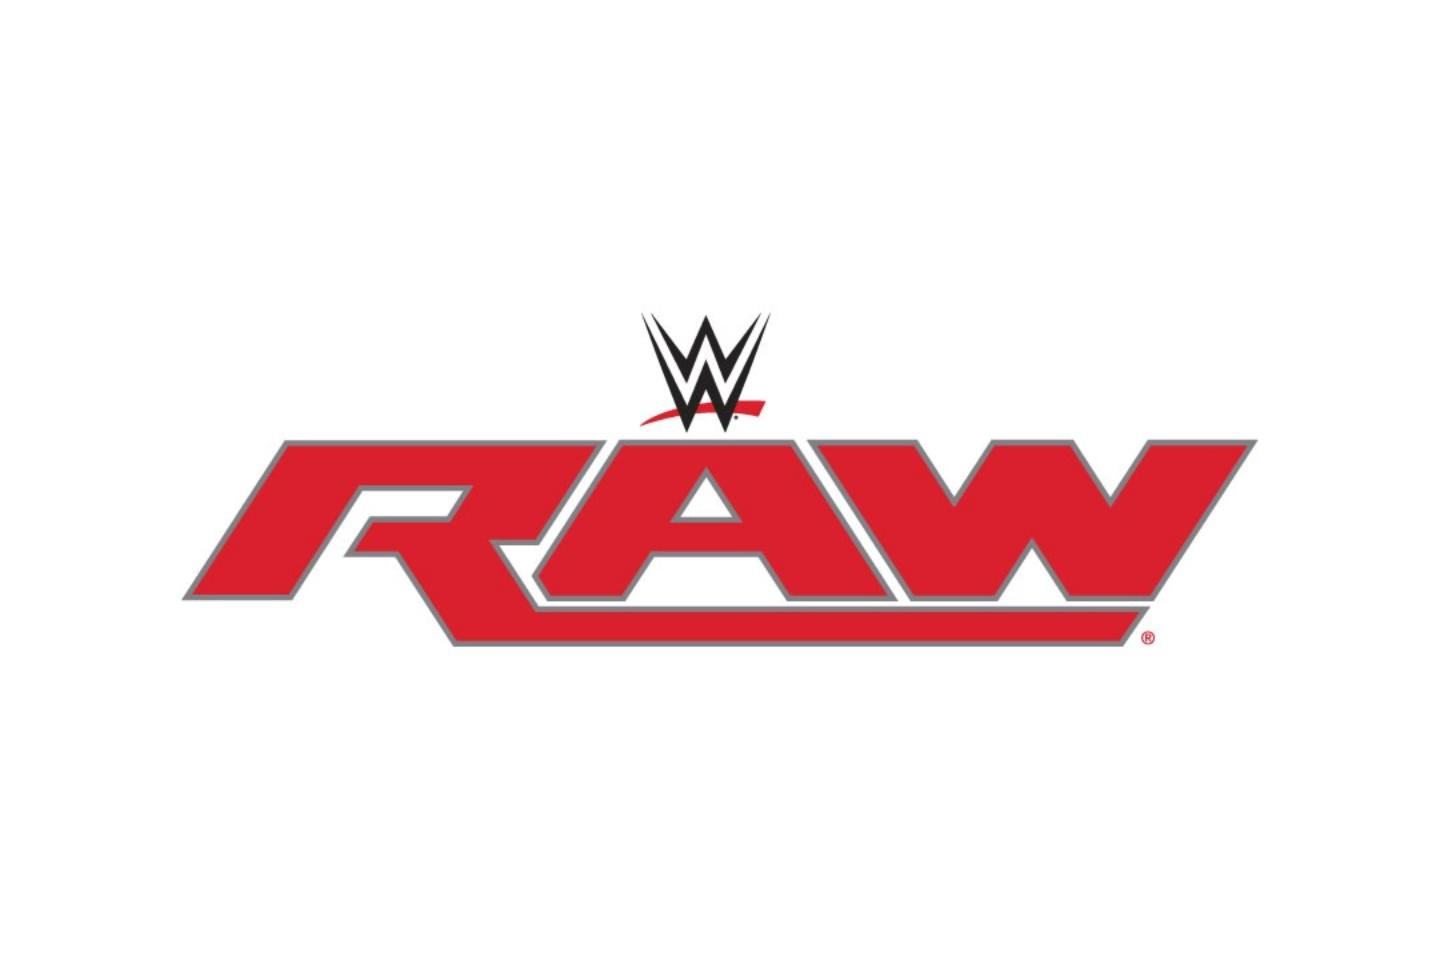 wwe raw logo 2018